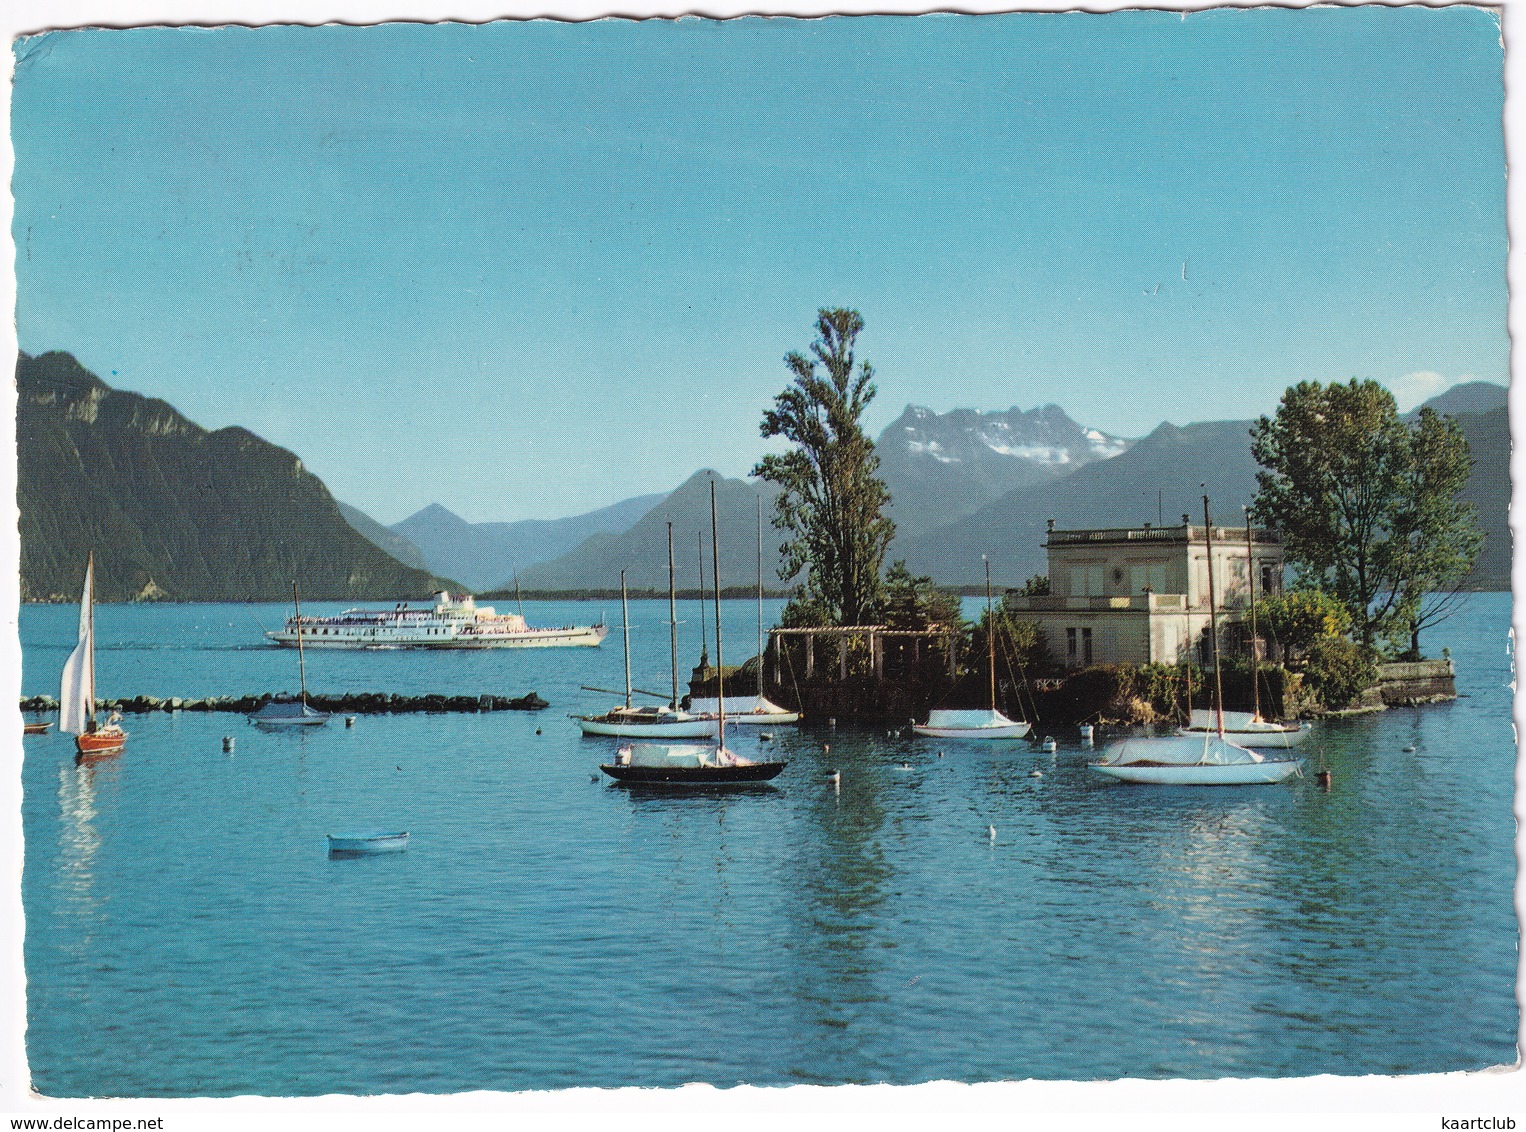 Montreux - Clarens: SALONBOOT - Ile De Salagnon / Insel - (Suisse/Schweiz) - Montreux